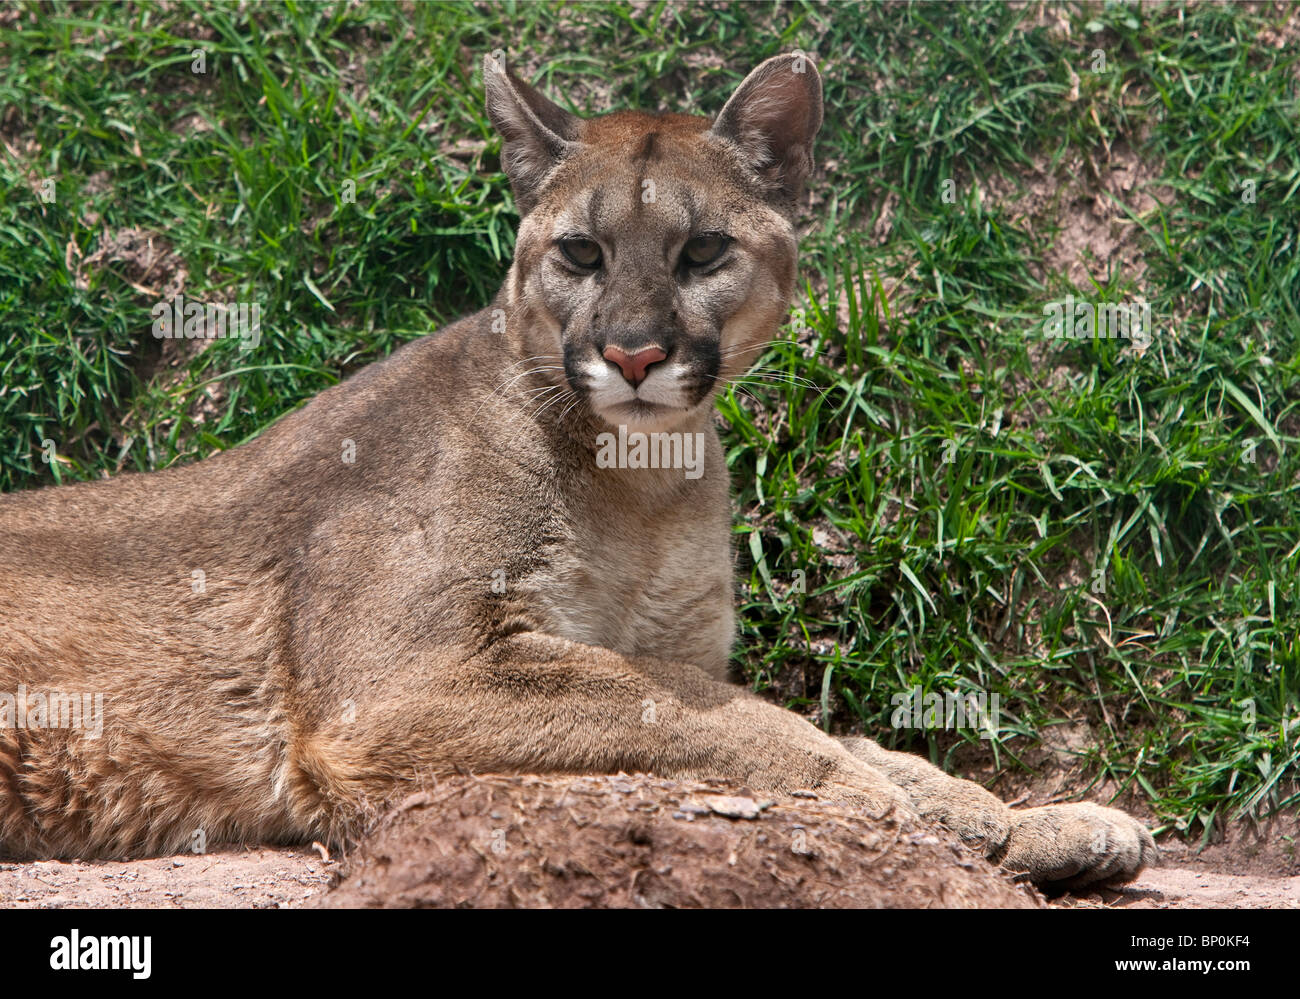 Peru. Ein Puma oder Cougar, eine große, leistungsfähige fleischfressende Tier der Wildkatze-Familie. Stockfoto